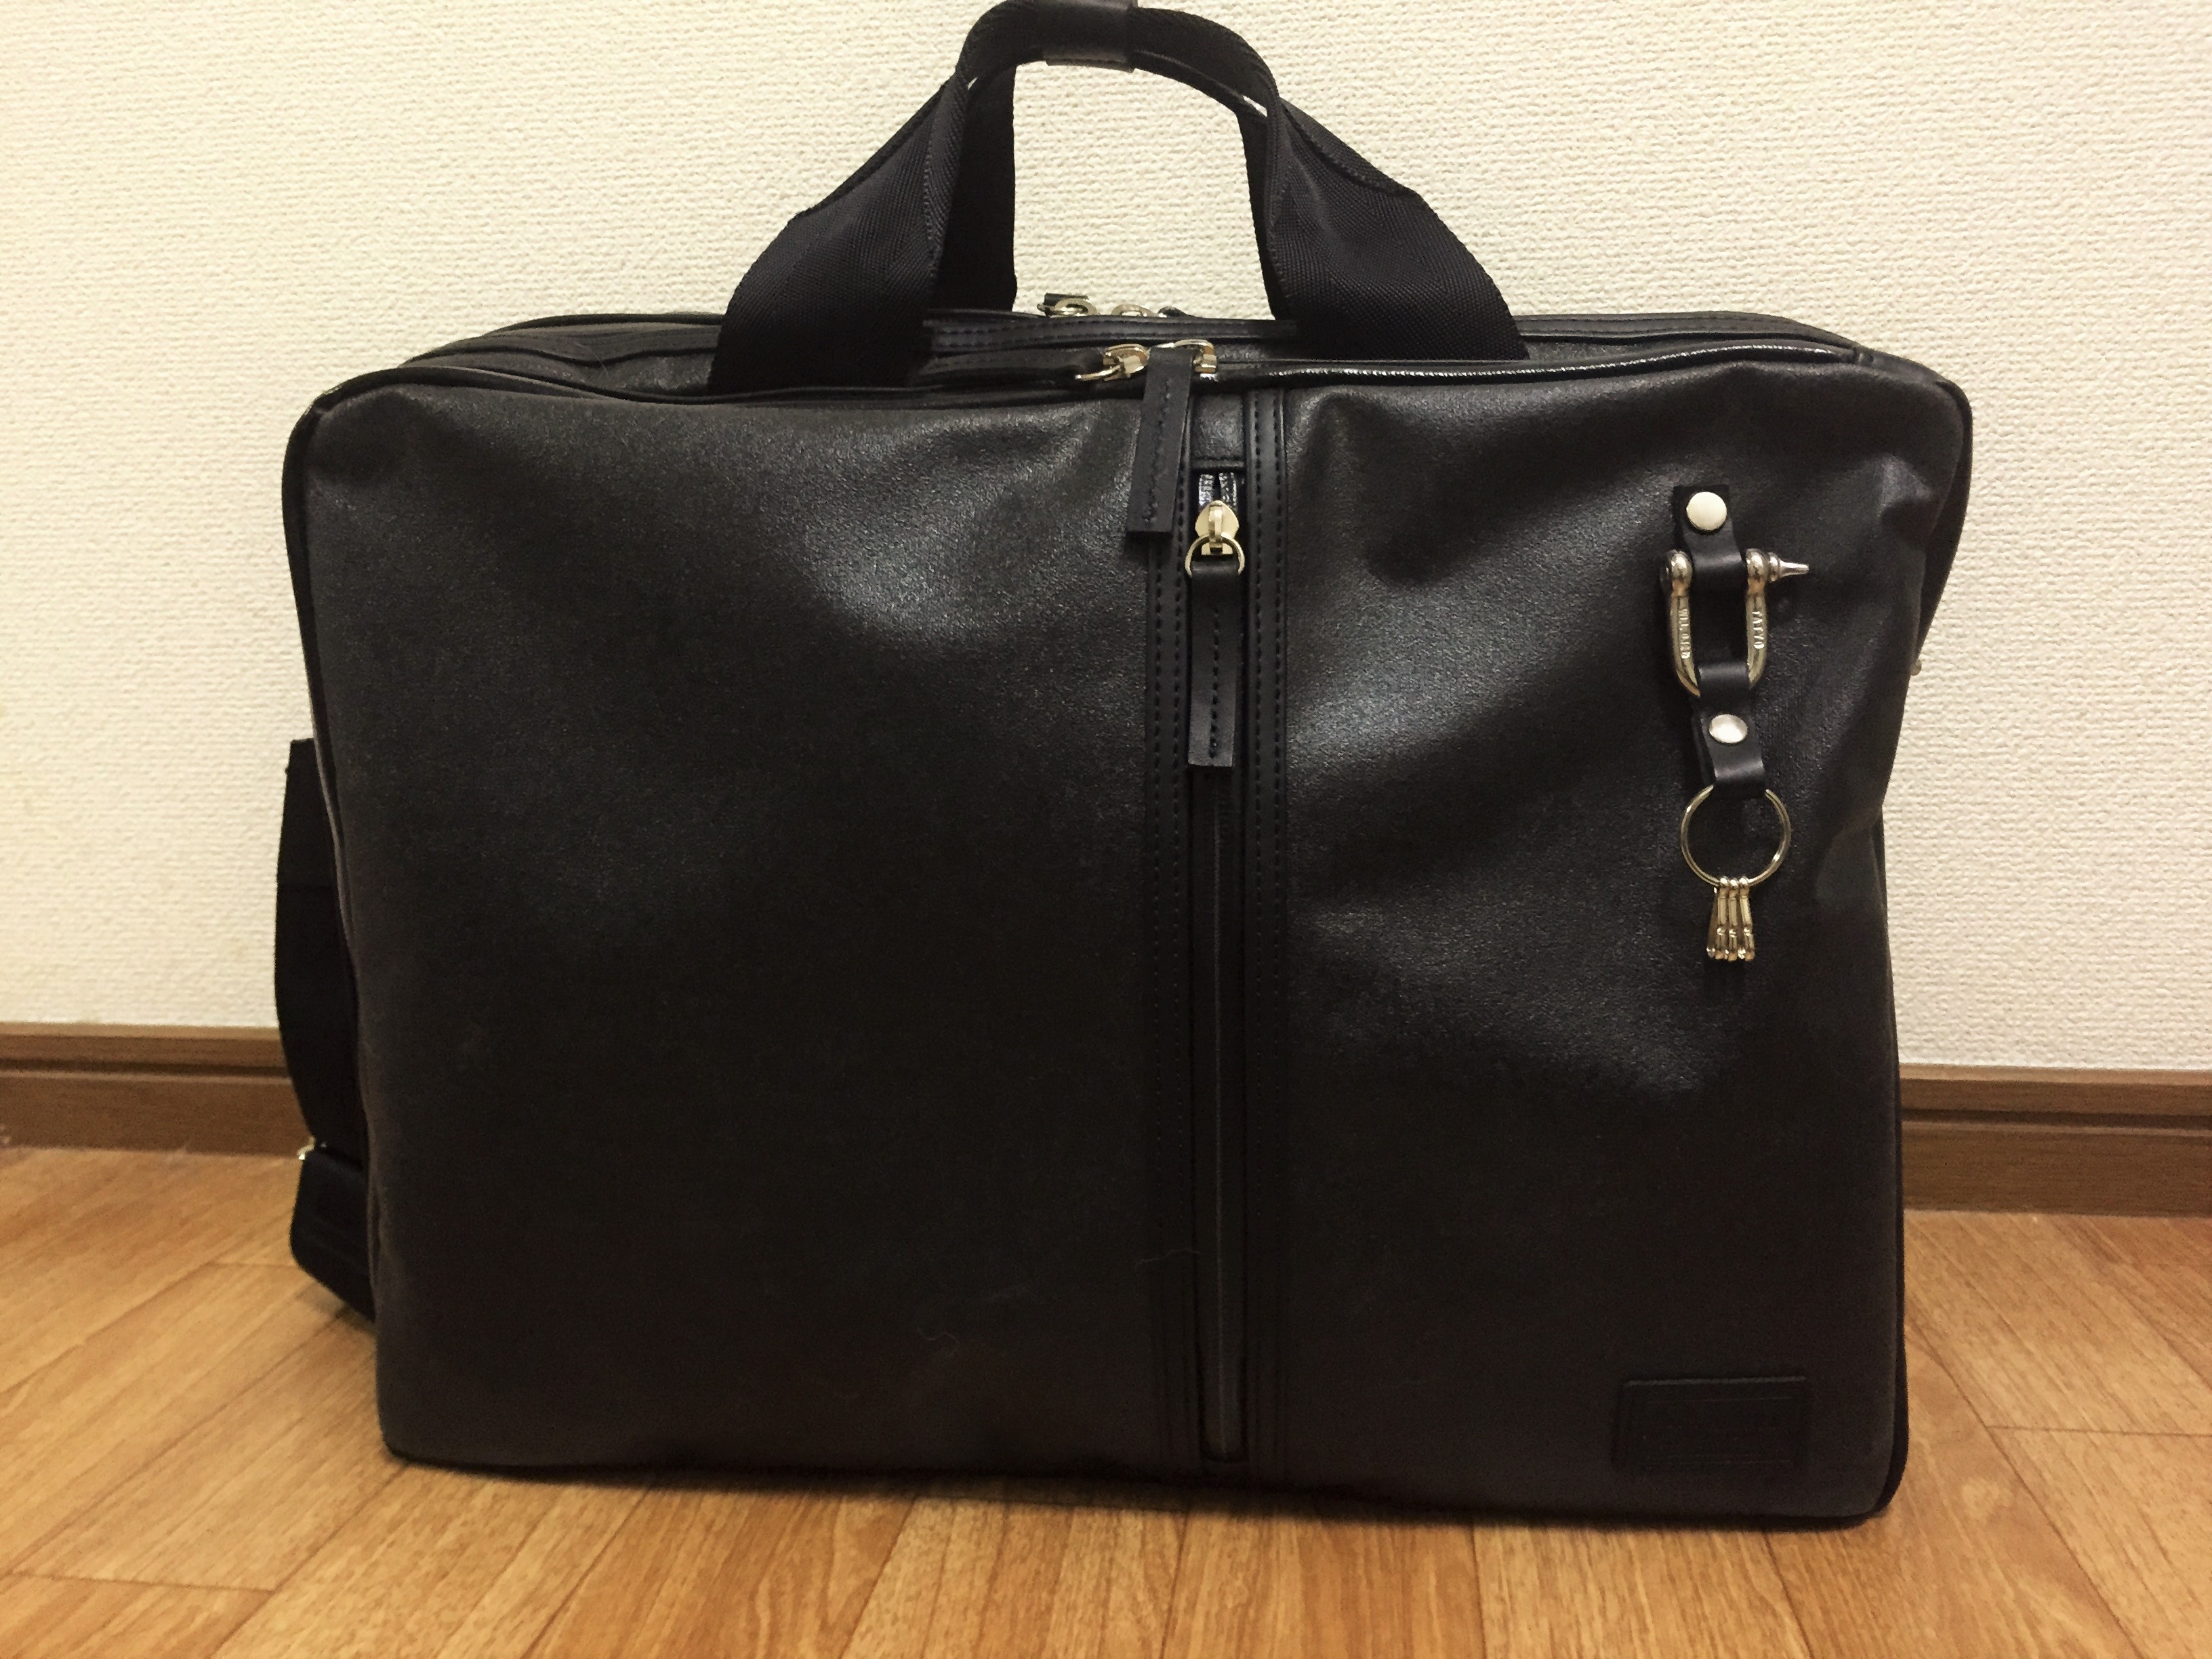 【レビュー】森野帆布3WAYバッグを1ヶ月使ってみて～ブリーフケースはビジネスで大活躍だ！